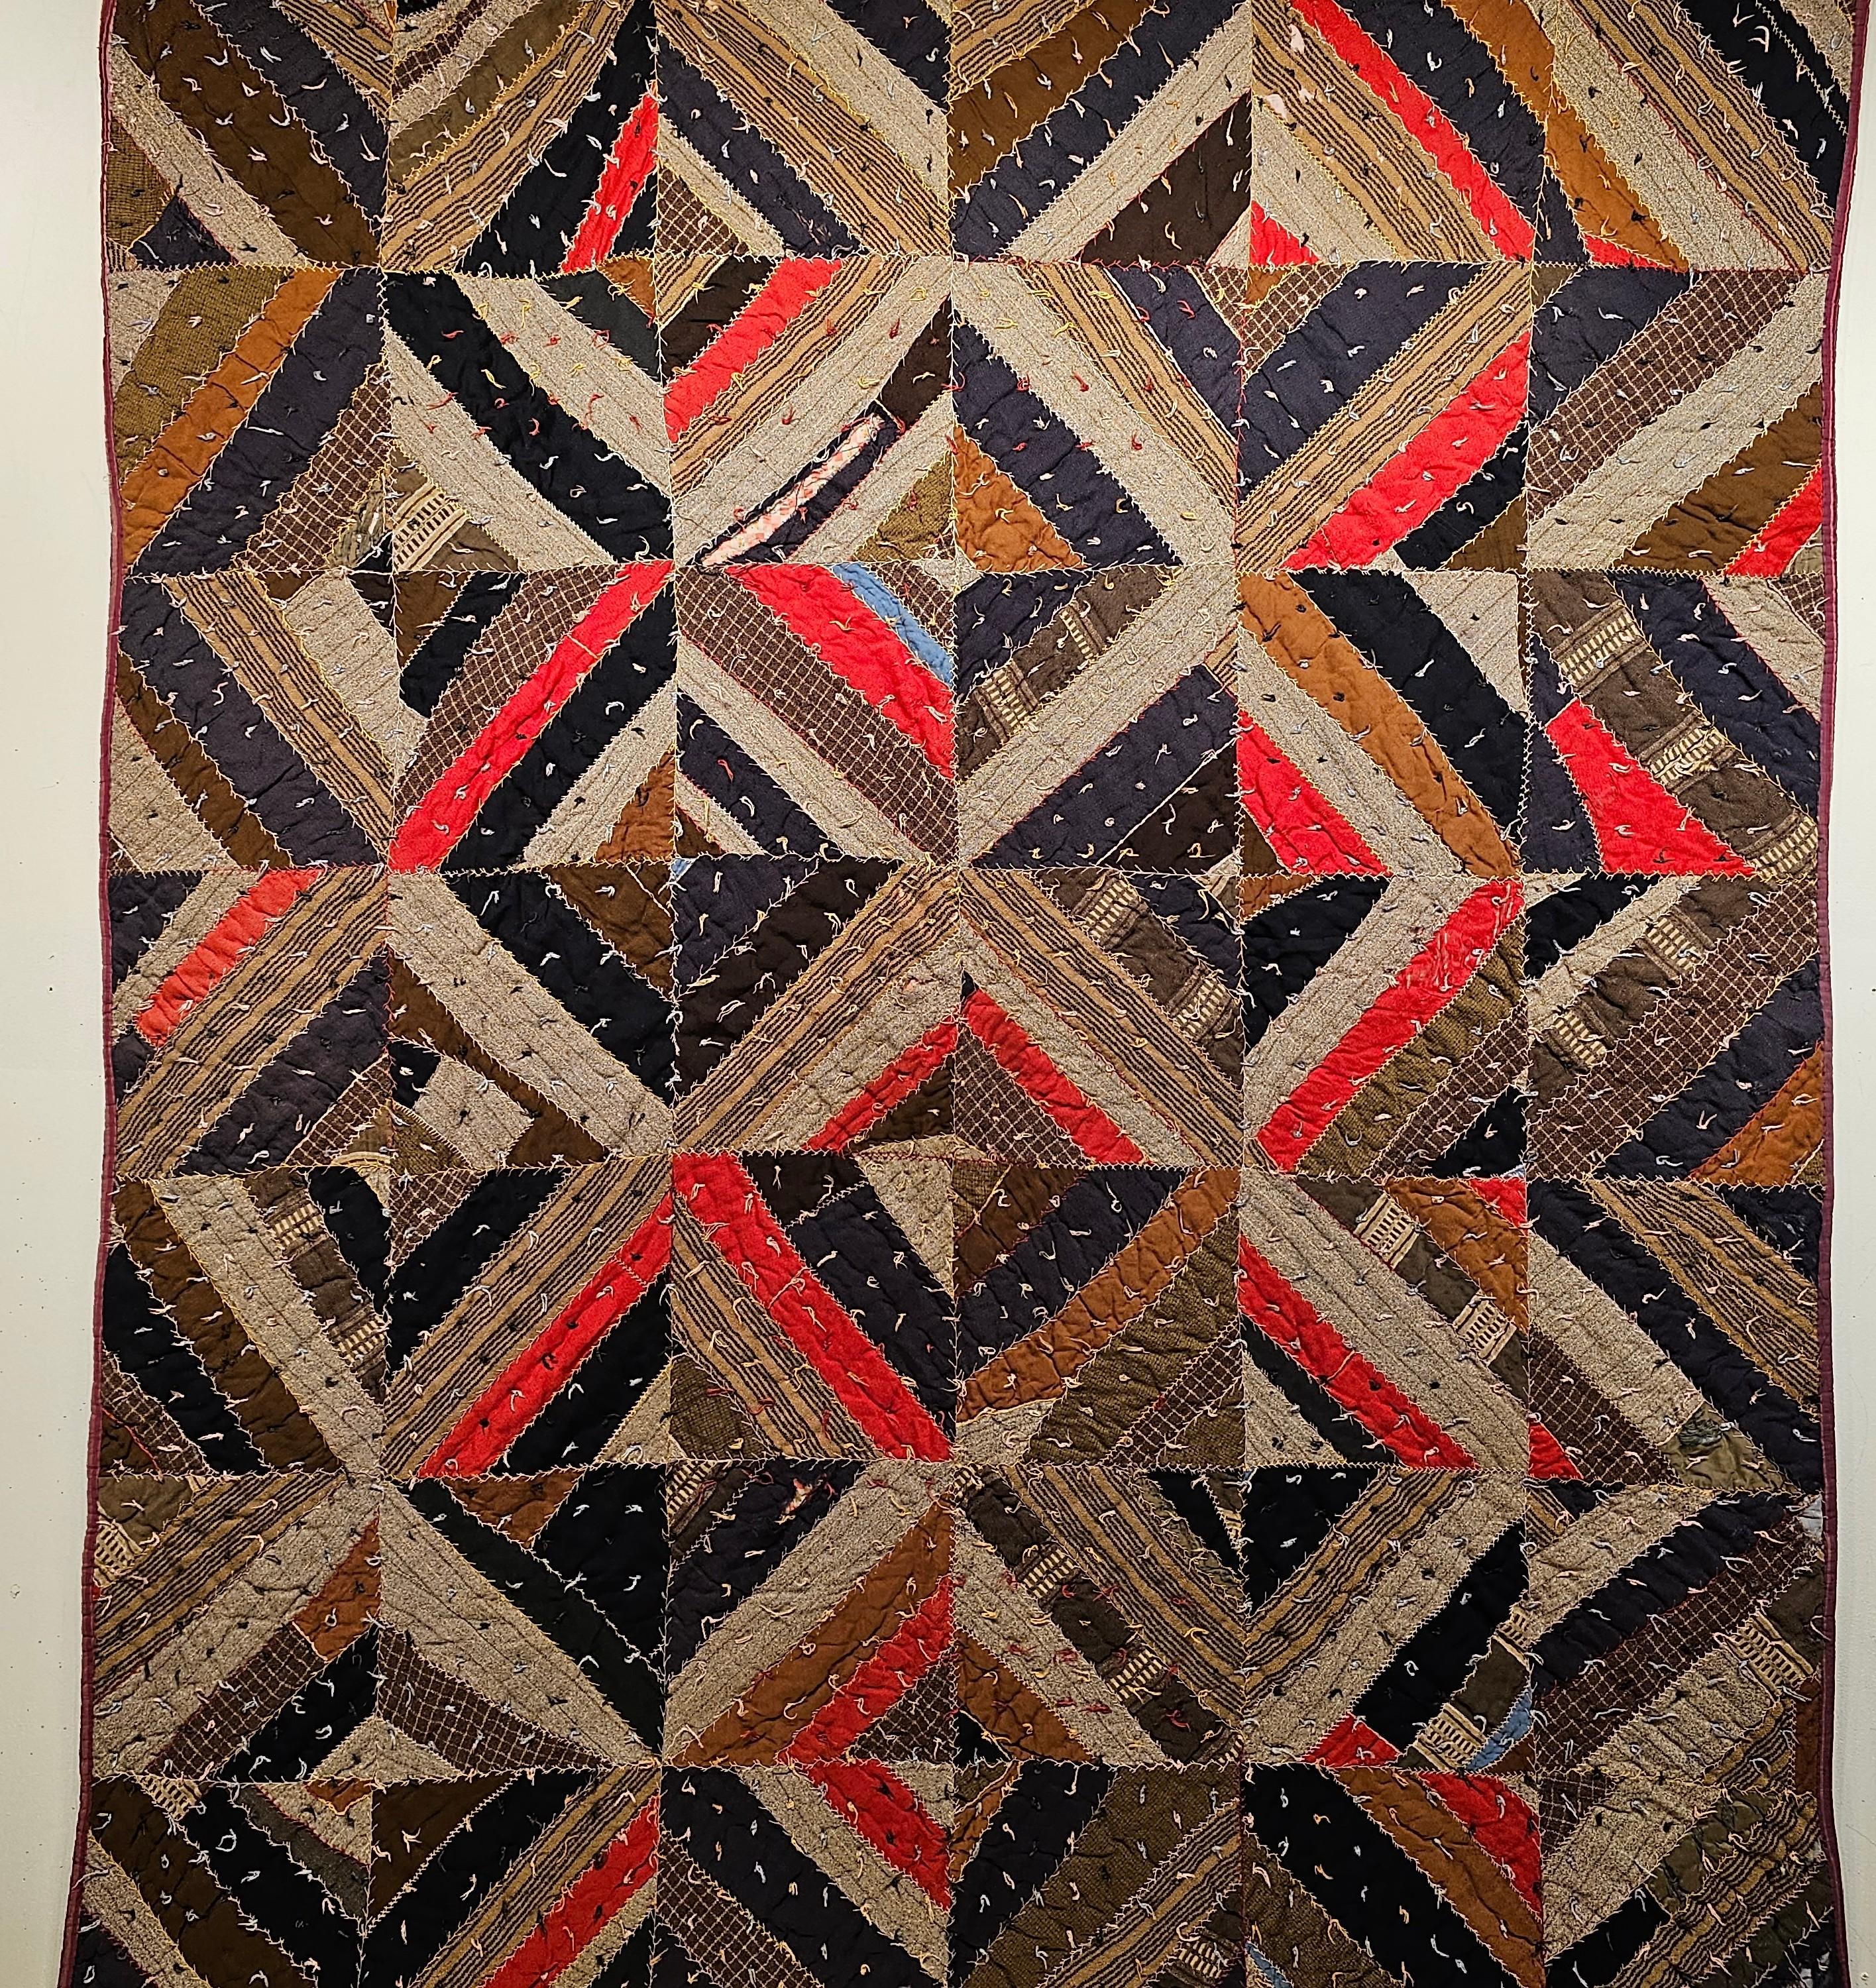 Ein afroamerikanischer Südstaaten-Quilt aus der Zeit des Amerikanischen Bürgerkriegs, ca. 1860-1870, aus Alabama oder Georgia im tiefen Süden der USA.  Der Quilt ist aus Wolle und selbstgesponnenen Decken handgenäht.   Das Design besteht aus